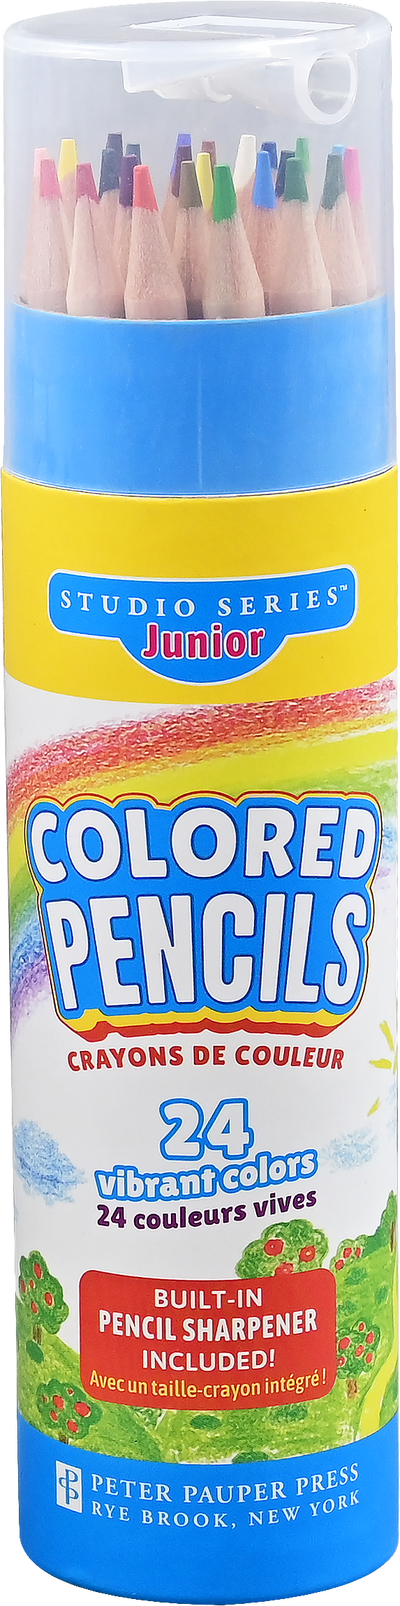 Studio Series Jr. Colored Pencils (Set of 24)